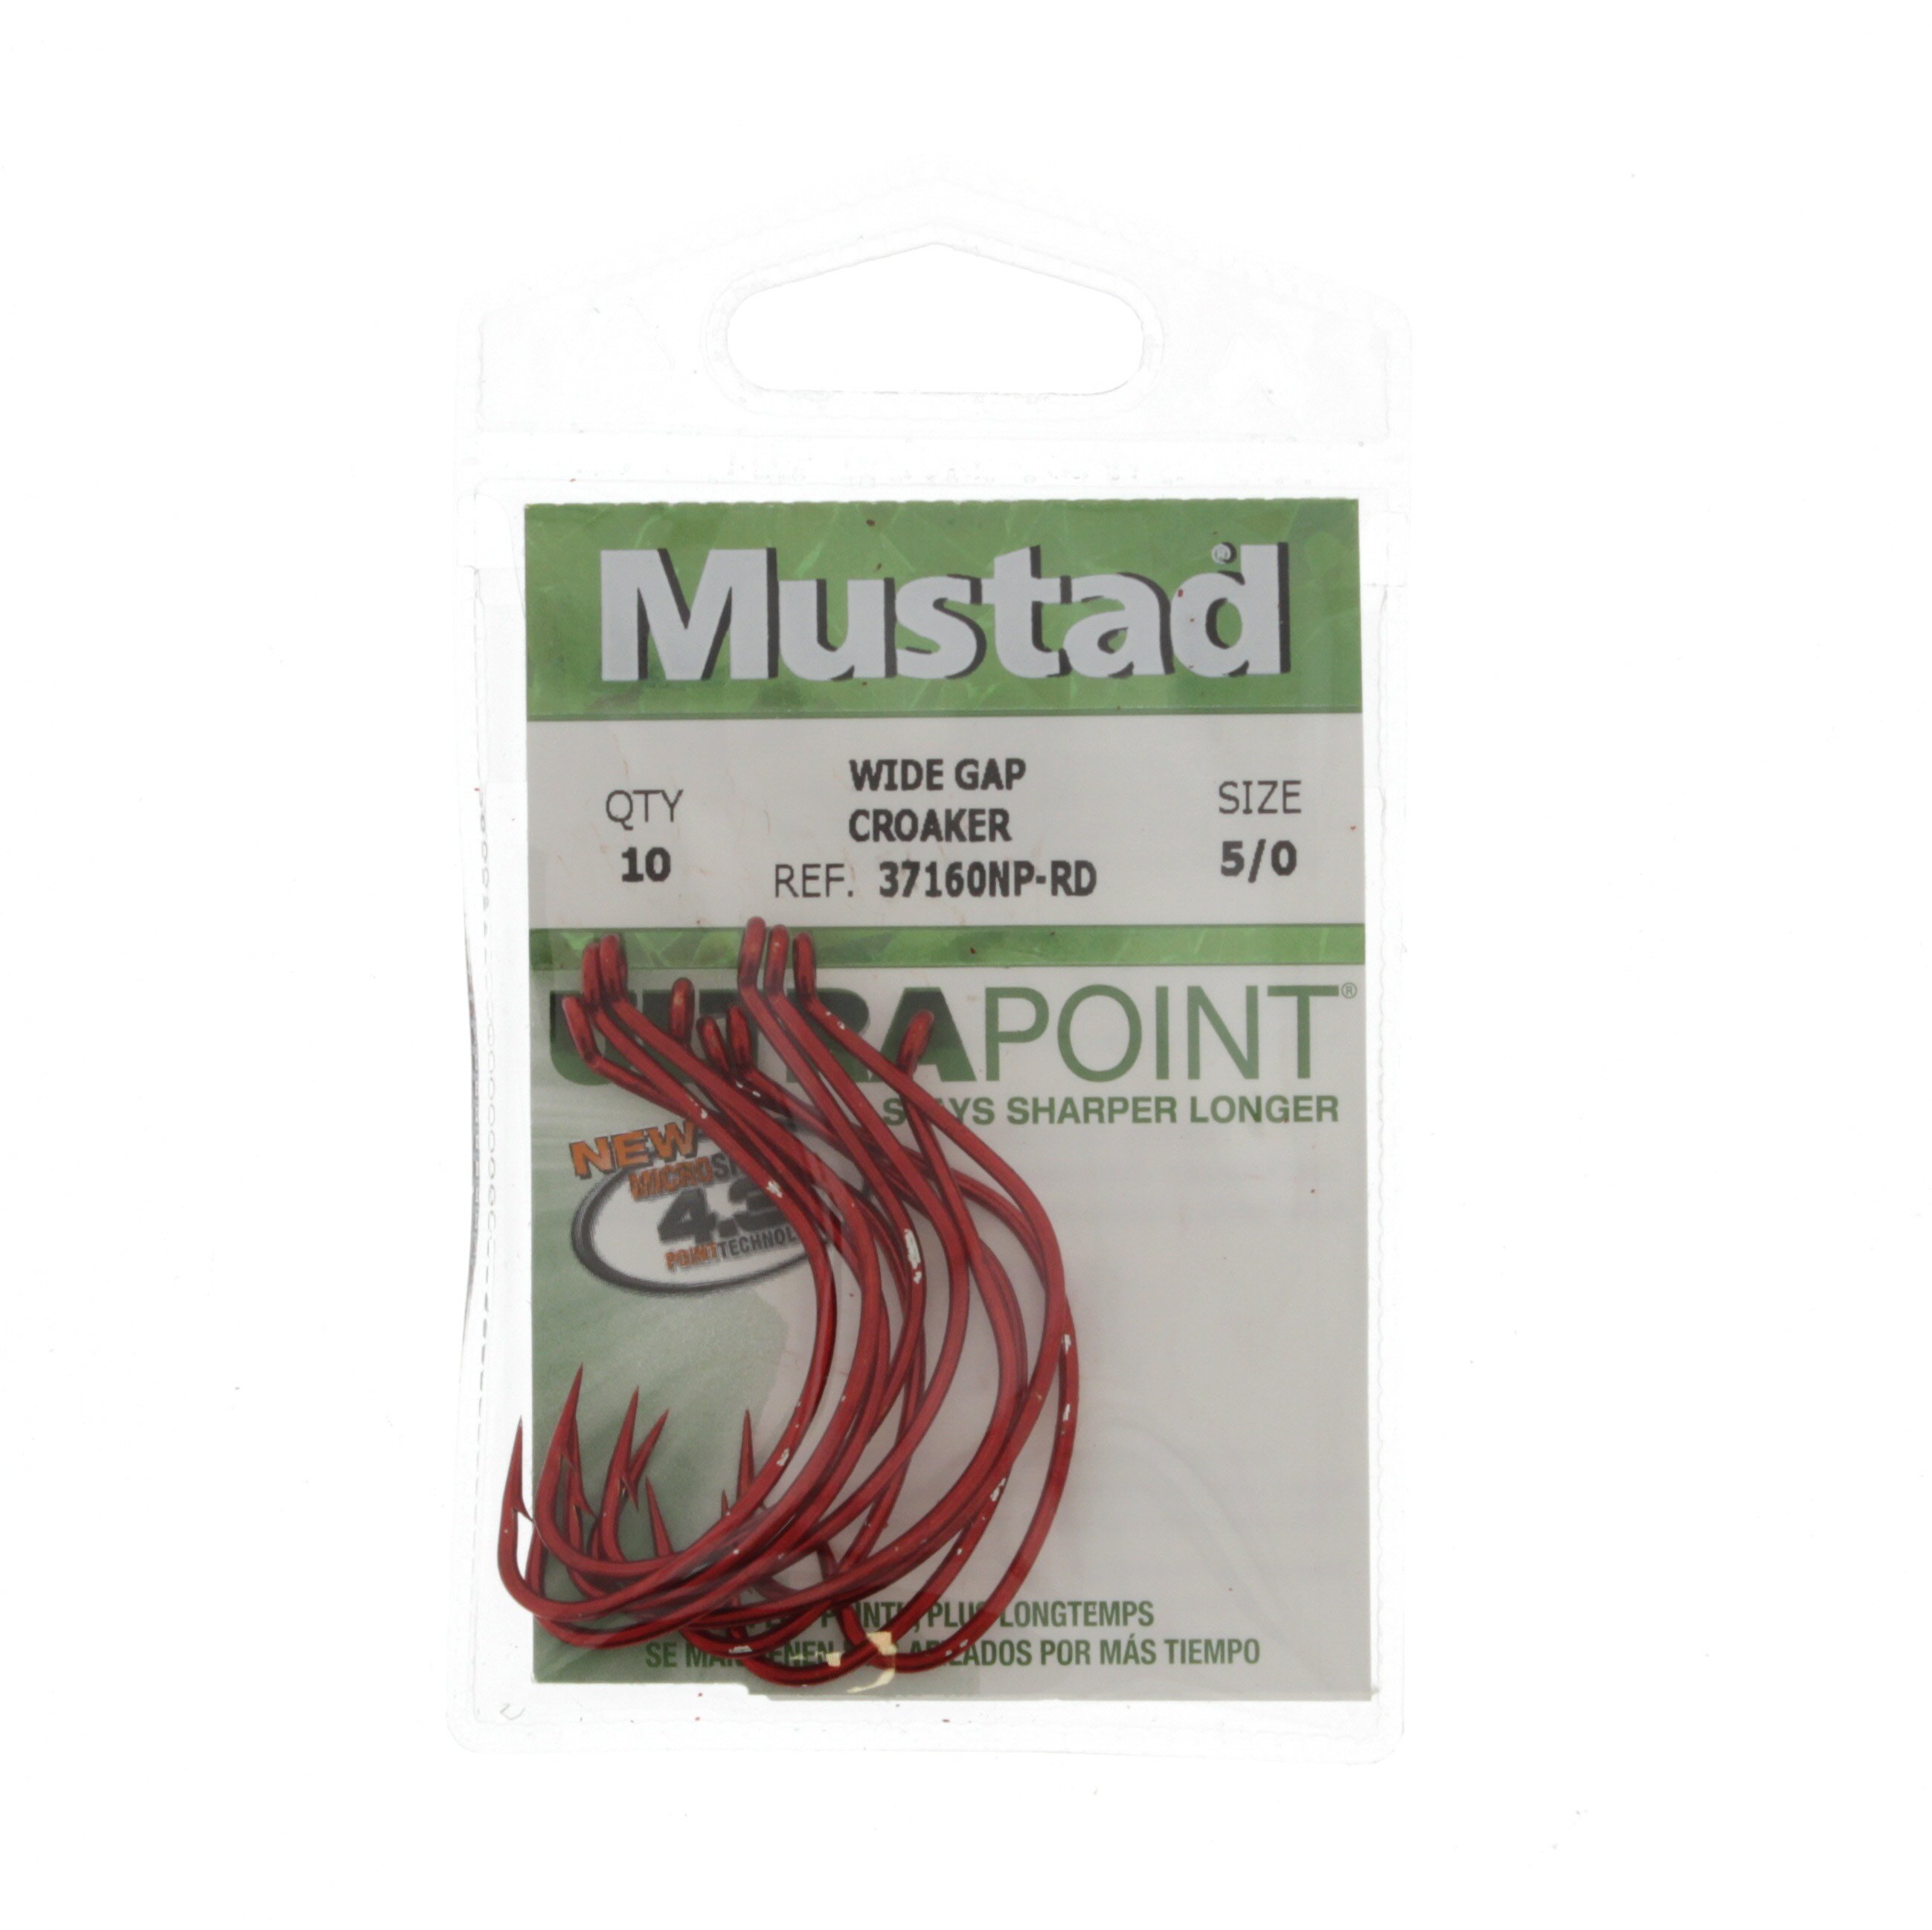 Mustad Ultra Point Wide Gap Red Croaker Hook Size 5/0 - Shop